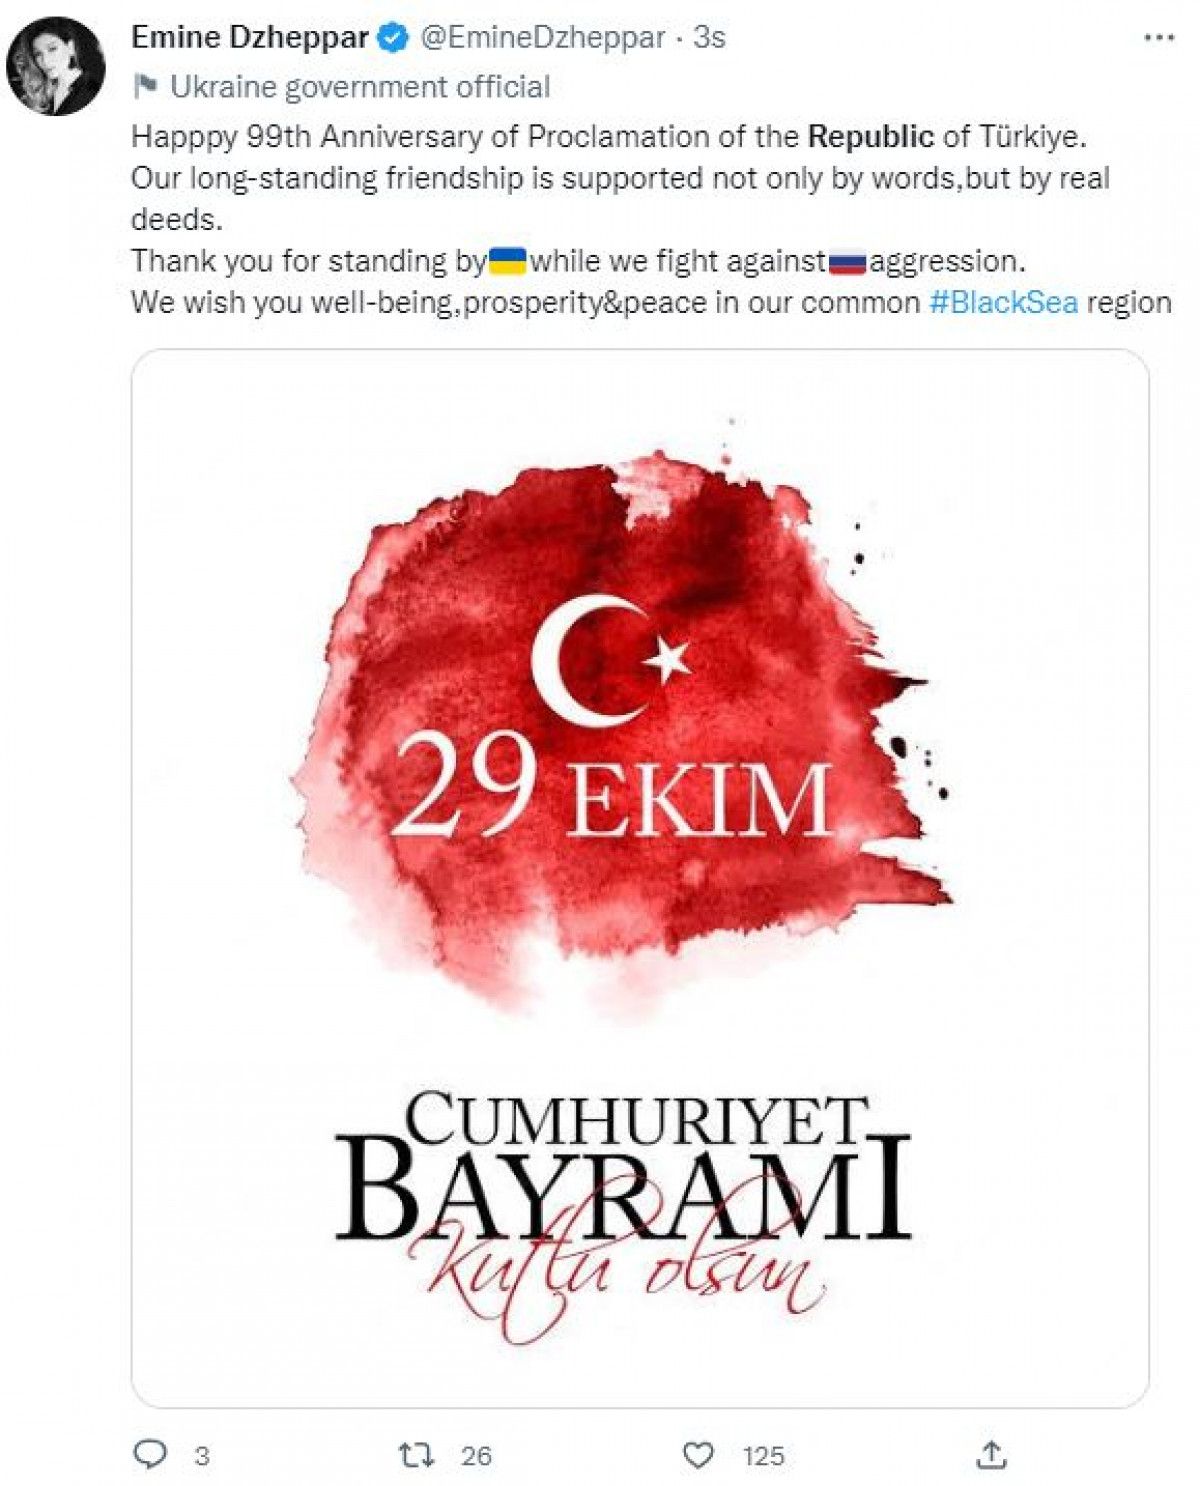 Dünyadan Türkiye'ye Cumhuriyet Bayramı kutlamaları #5